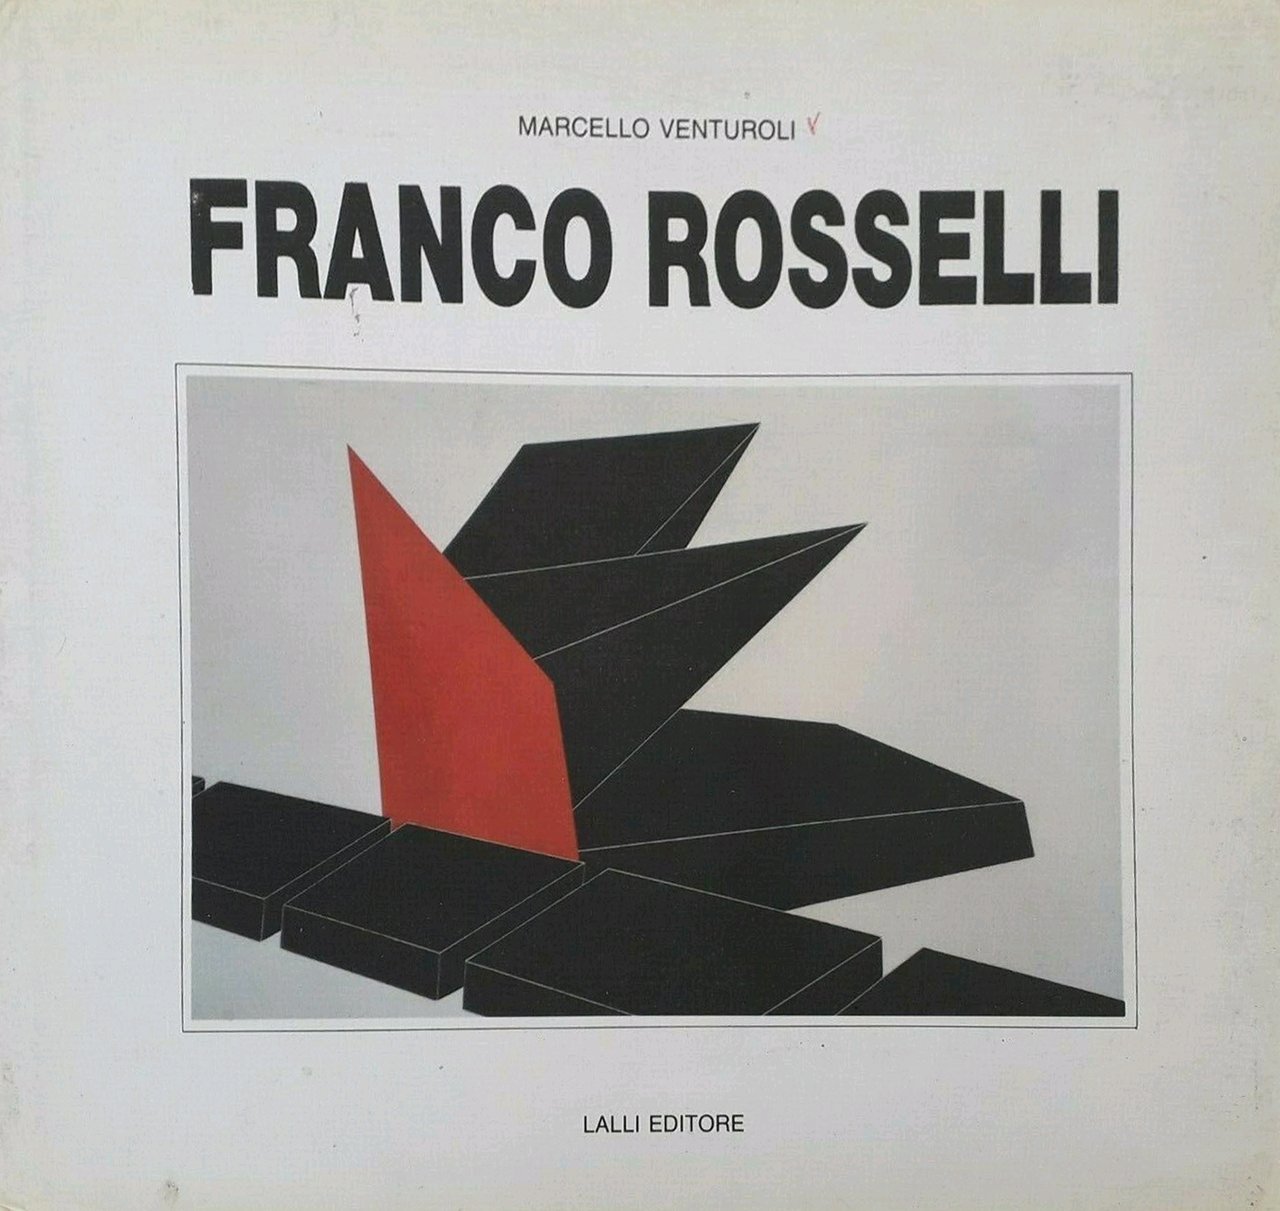 Franco rosselli, Poggibonsi, Lalli Editore, 1991